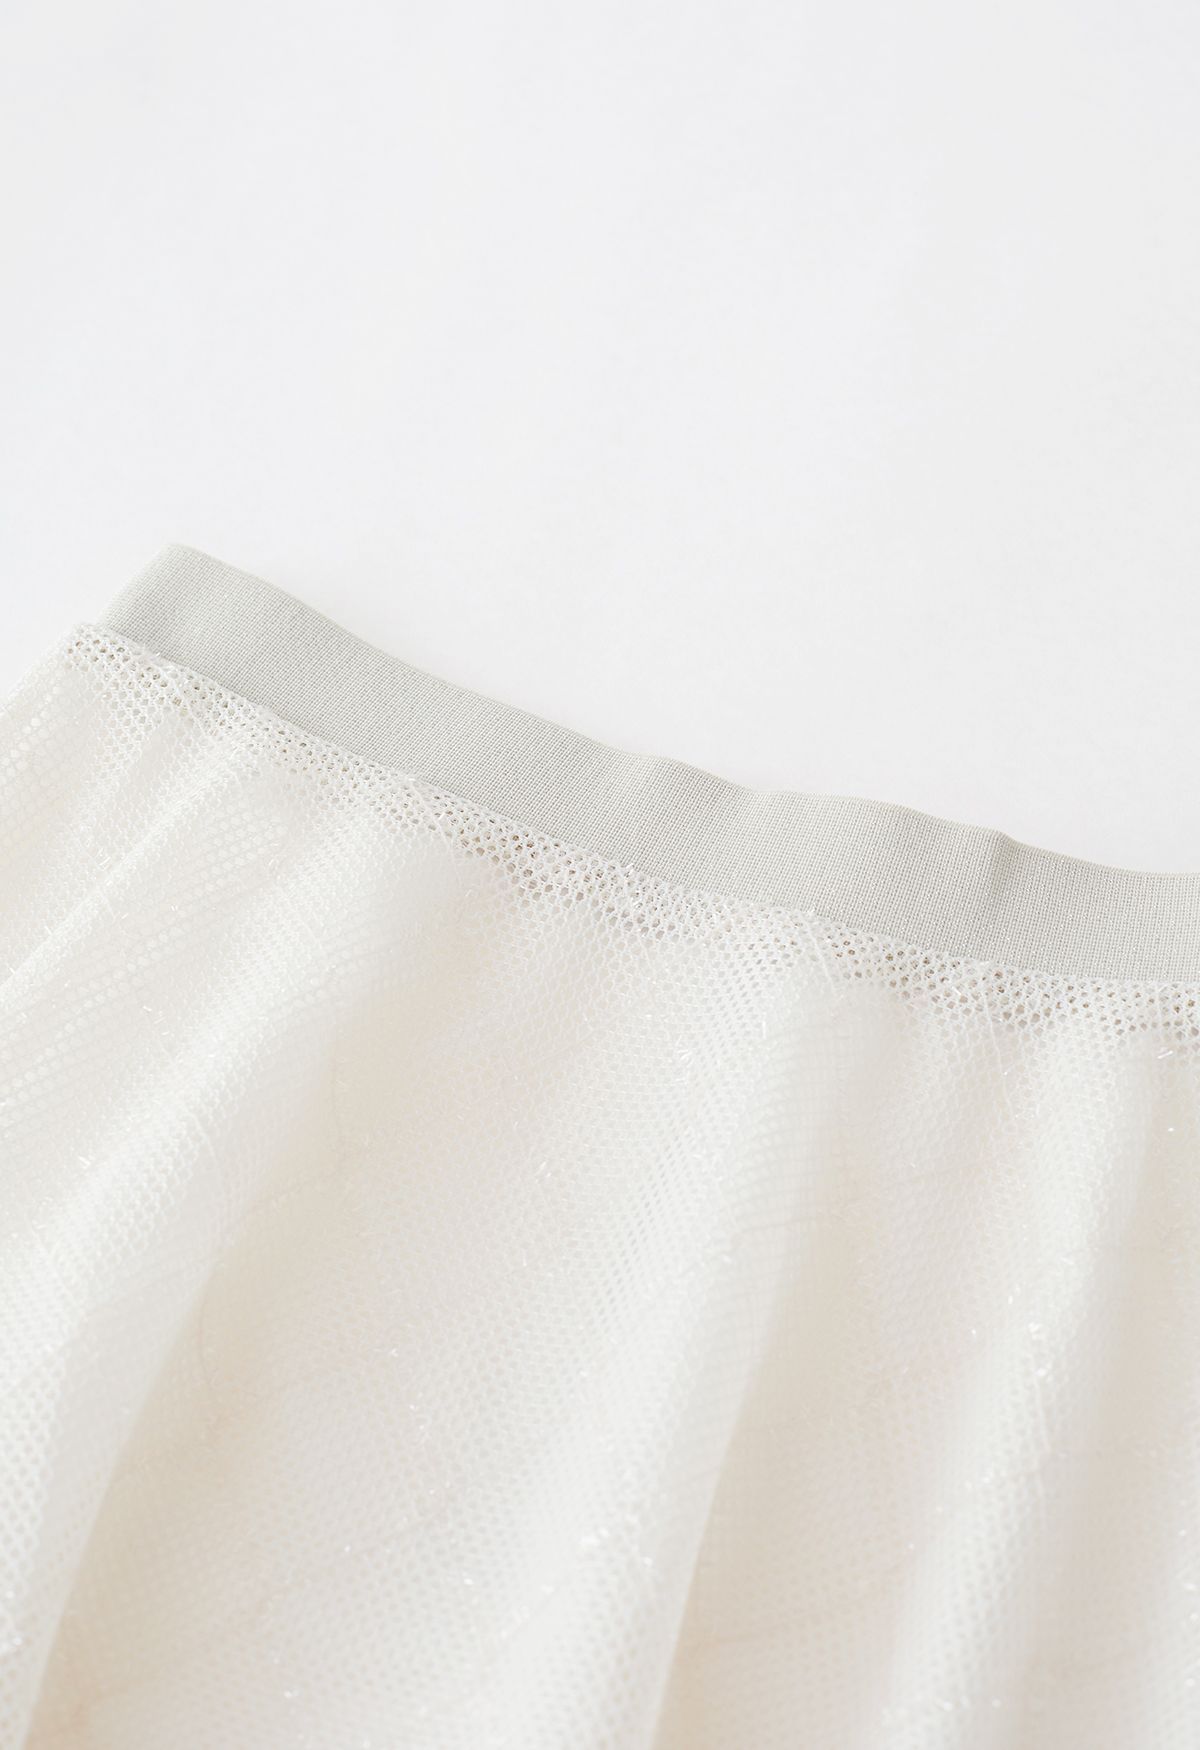 Shimmer Fringed Diamond Net Skirt in Cream